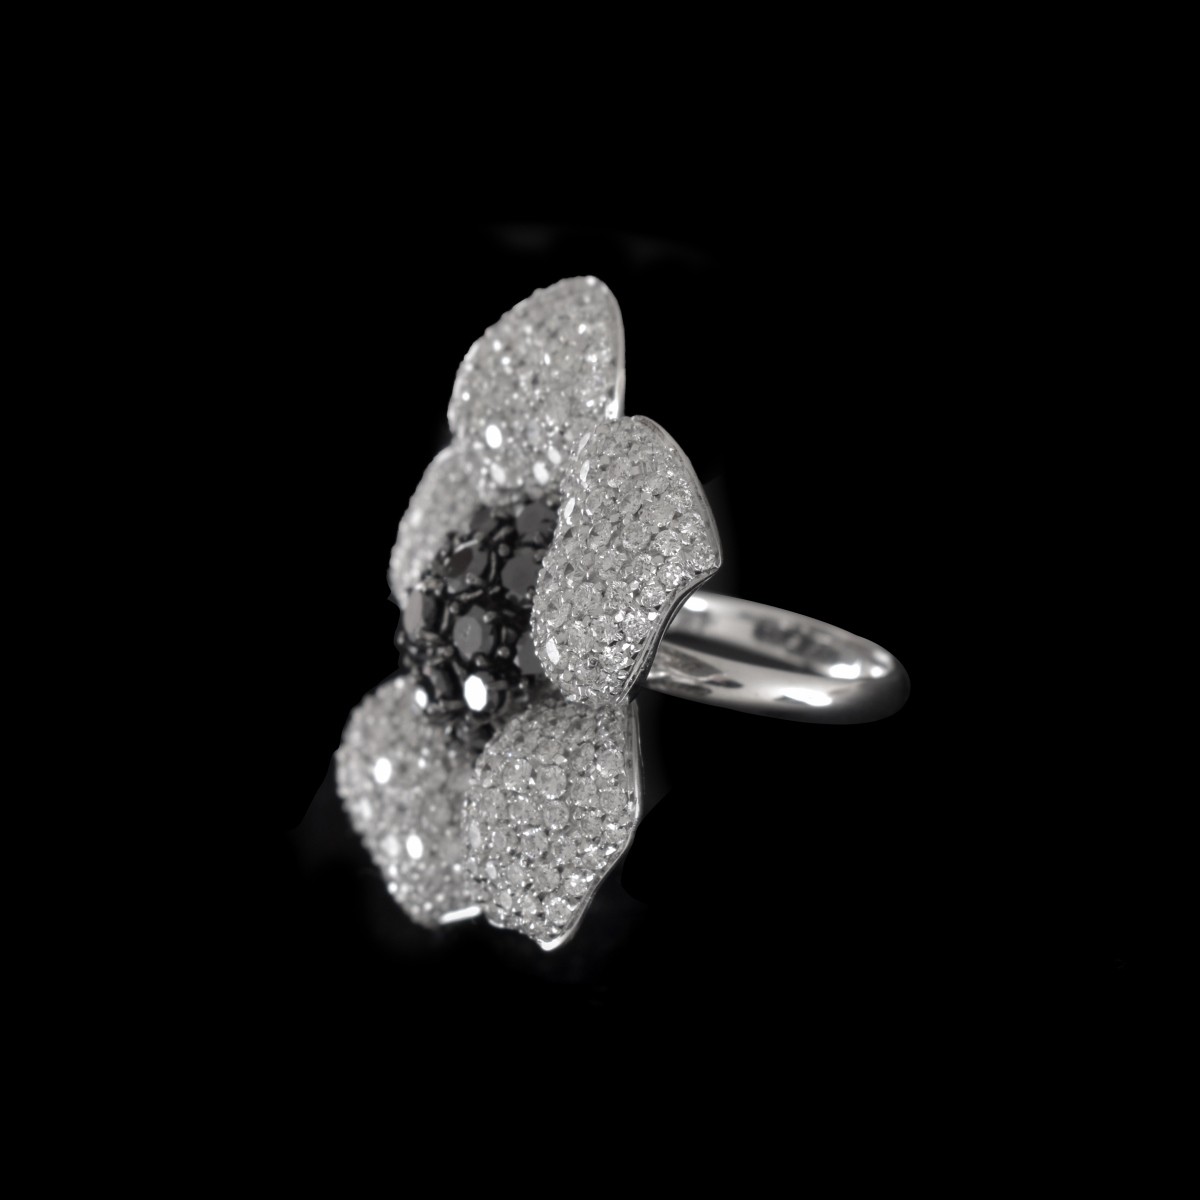 Van Cleef & Arpels style Diamond and 18K Ring